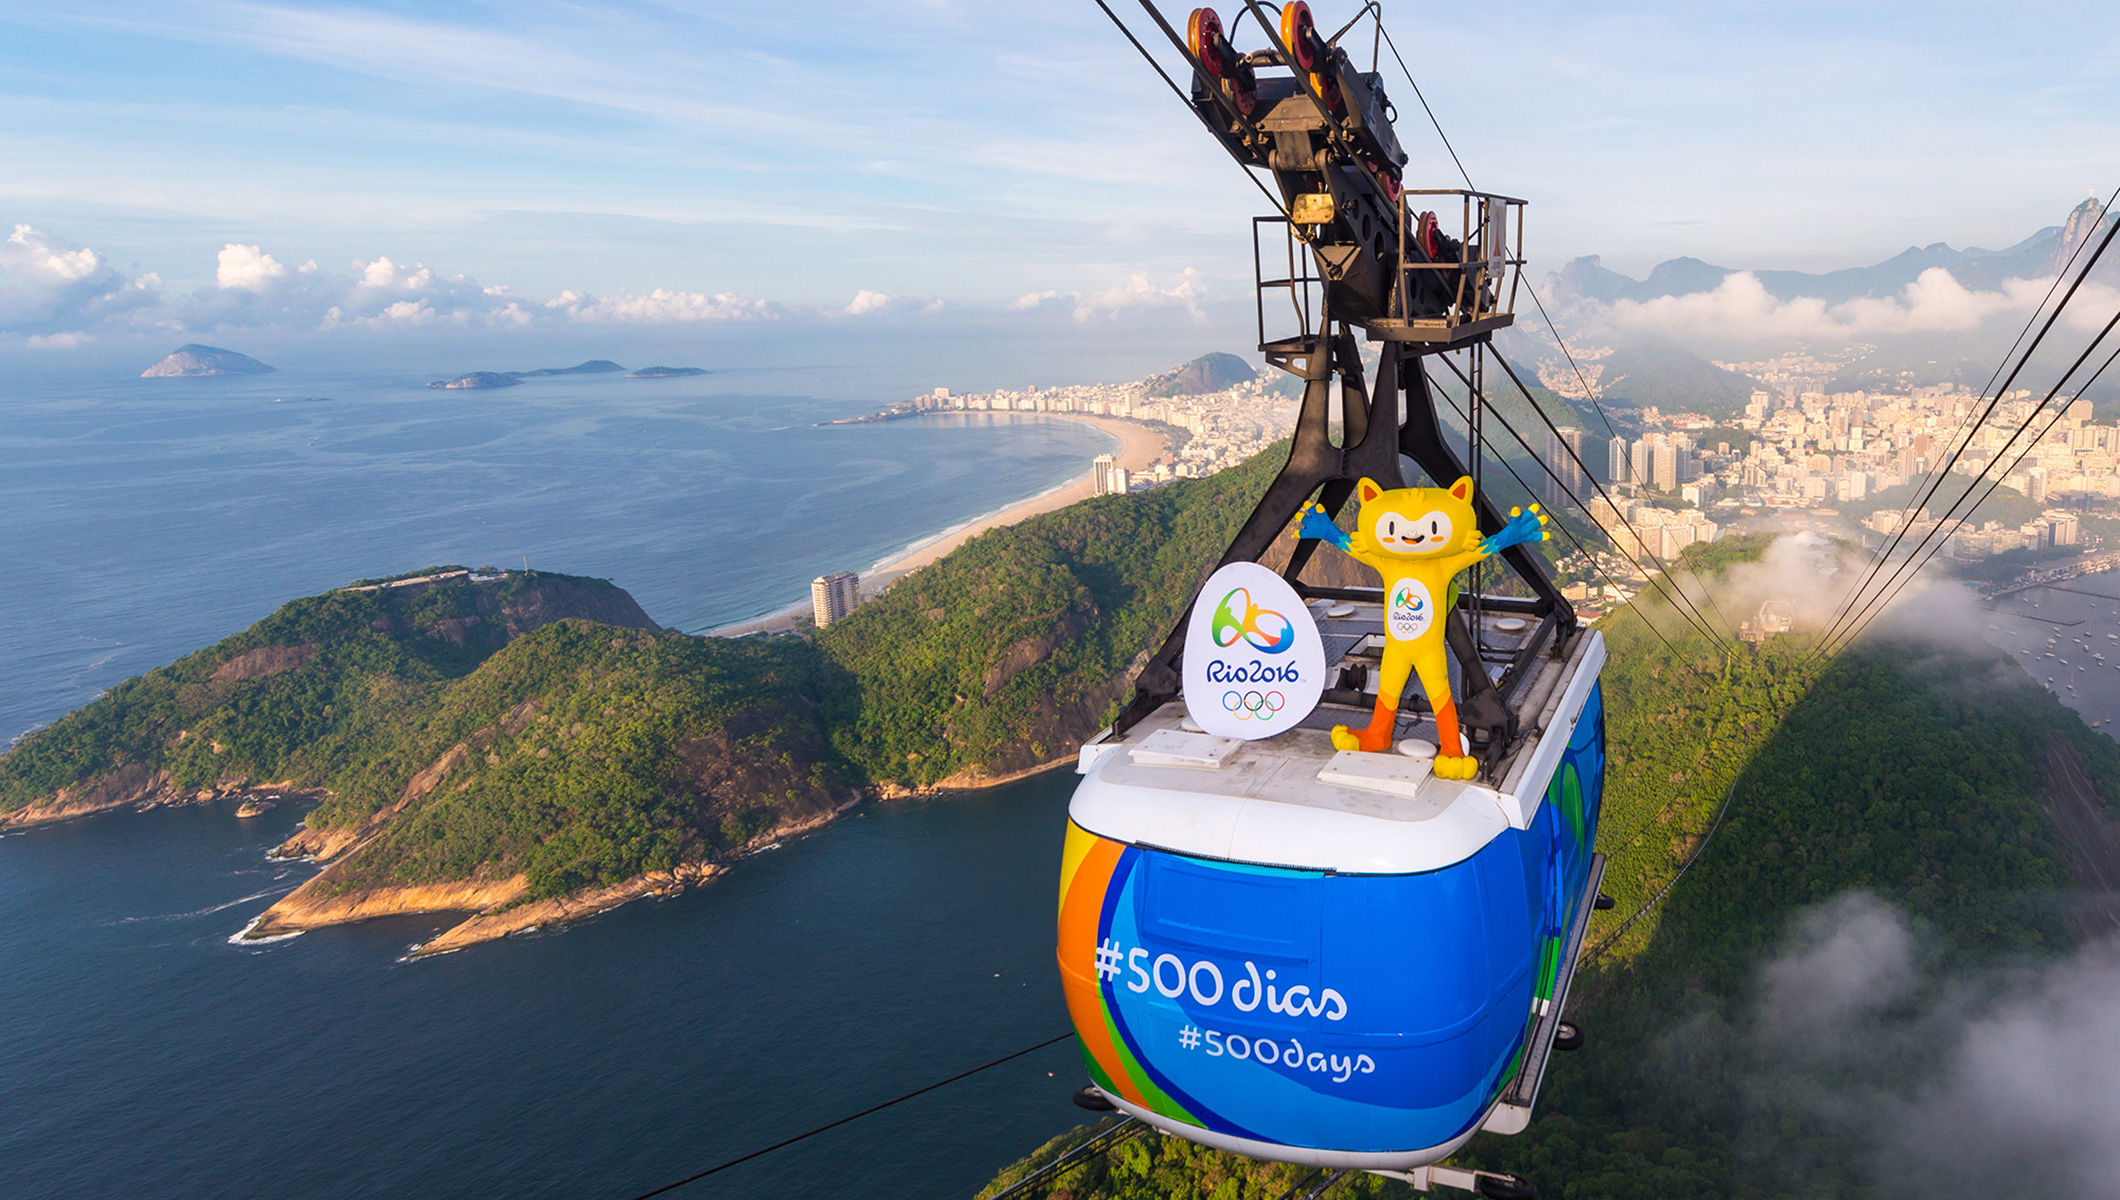 Rio_2016_mascots